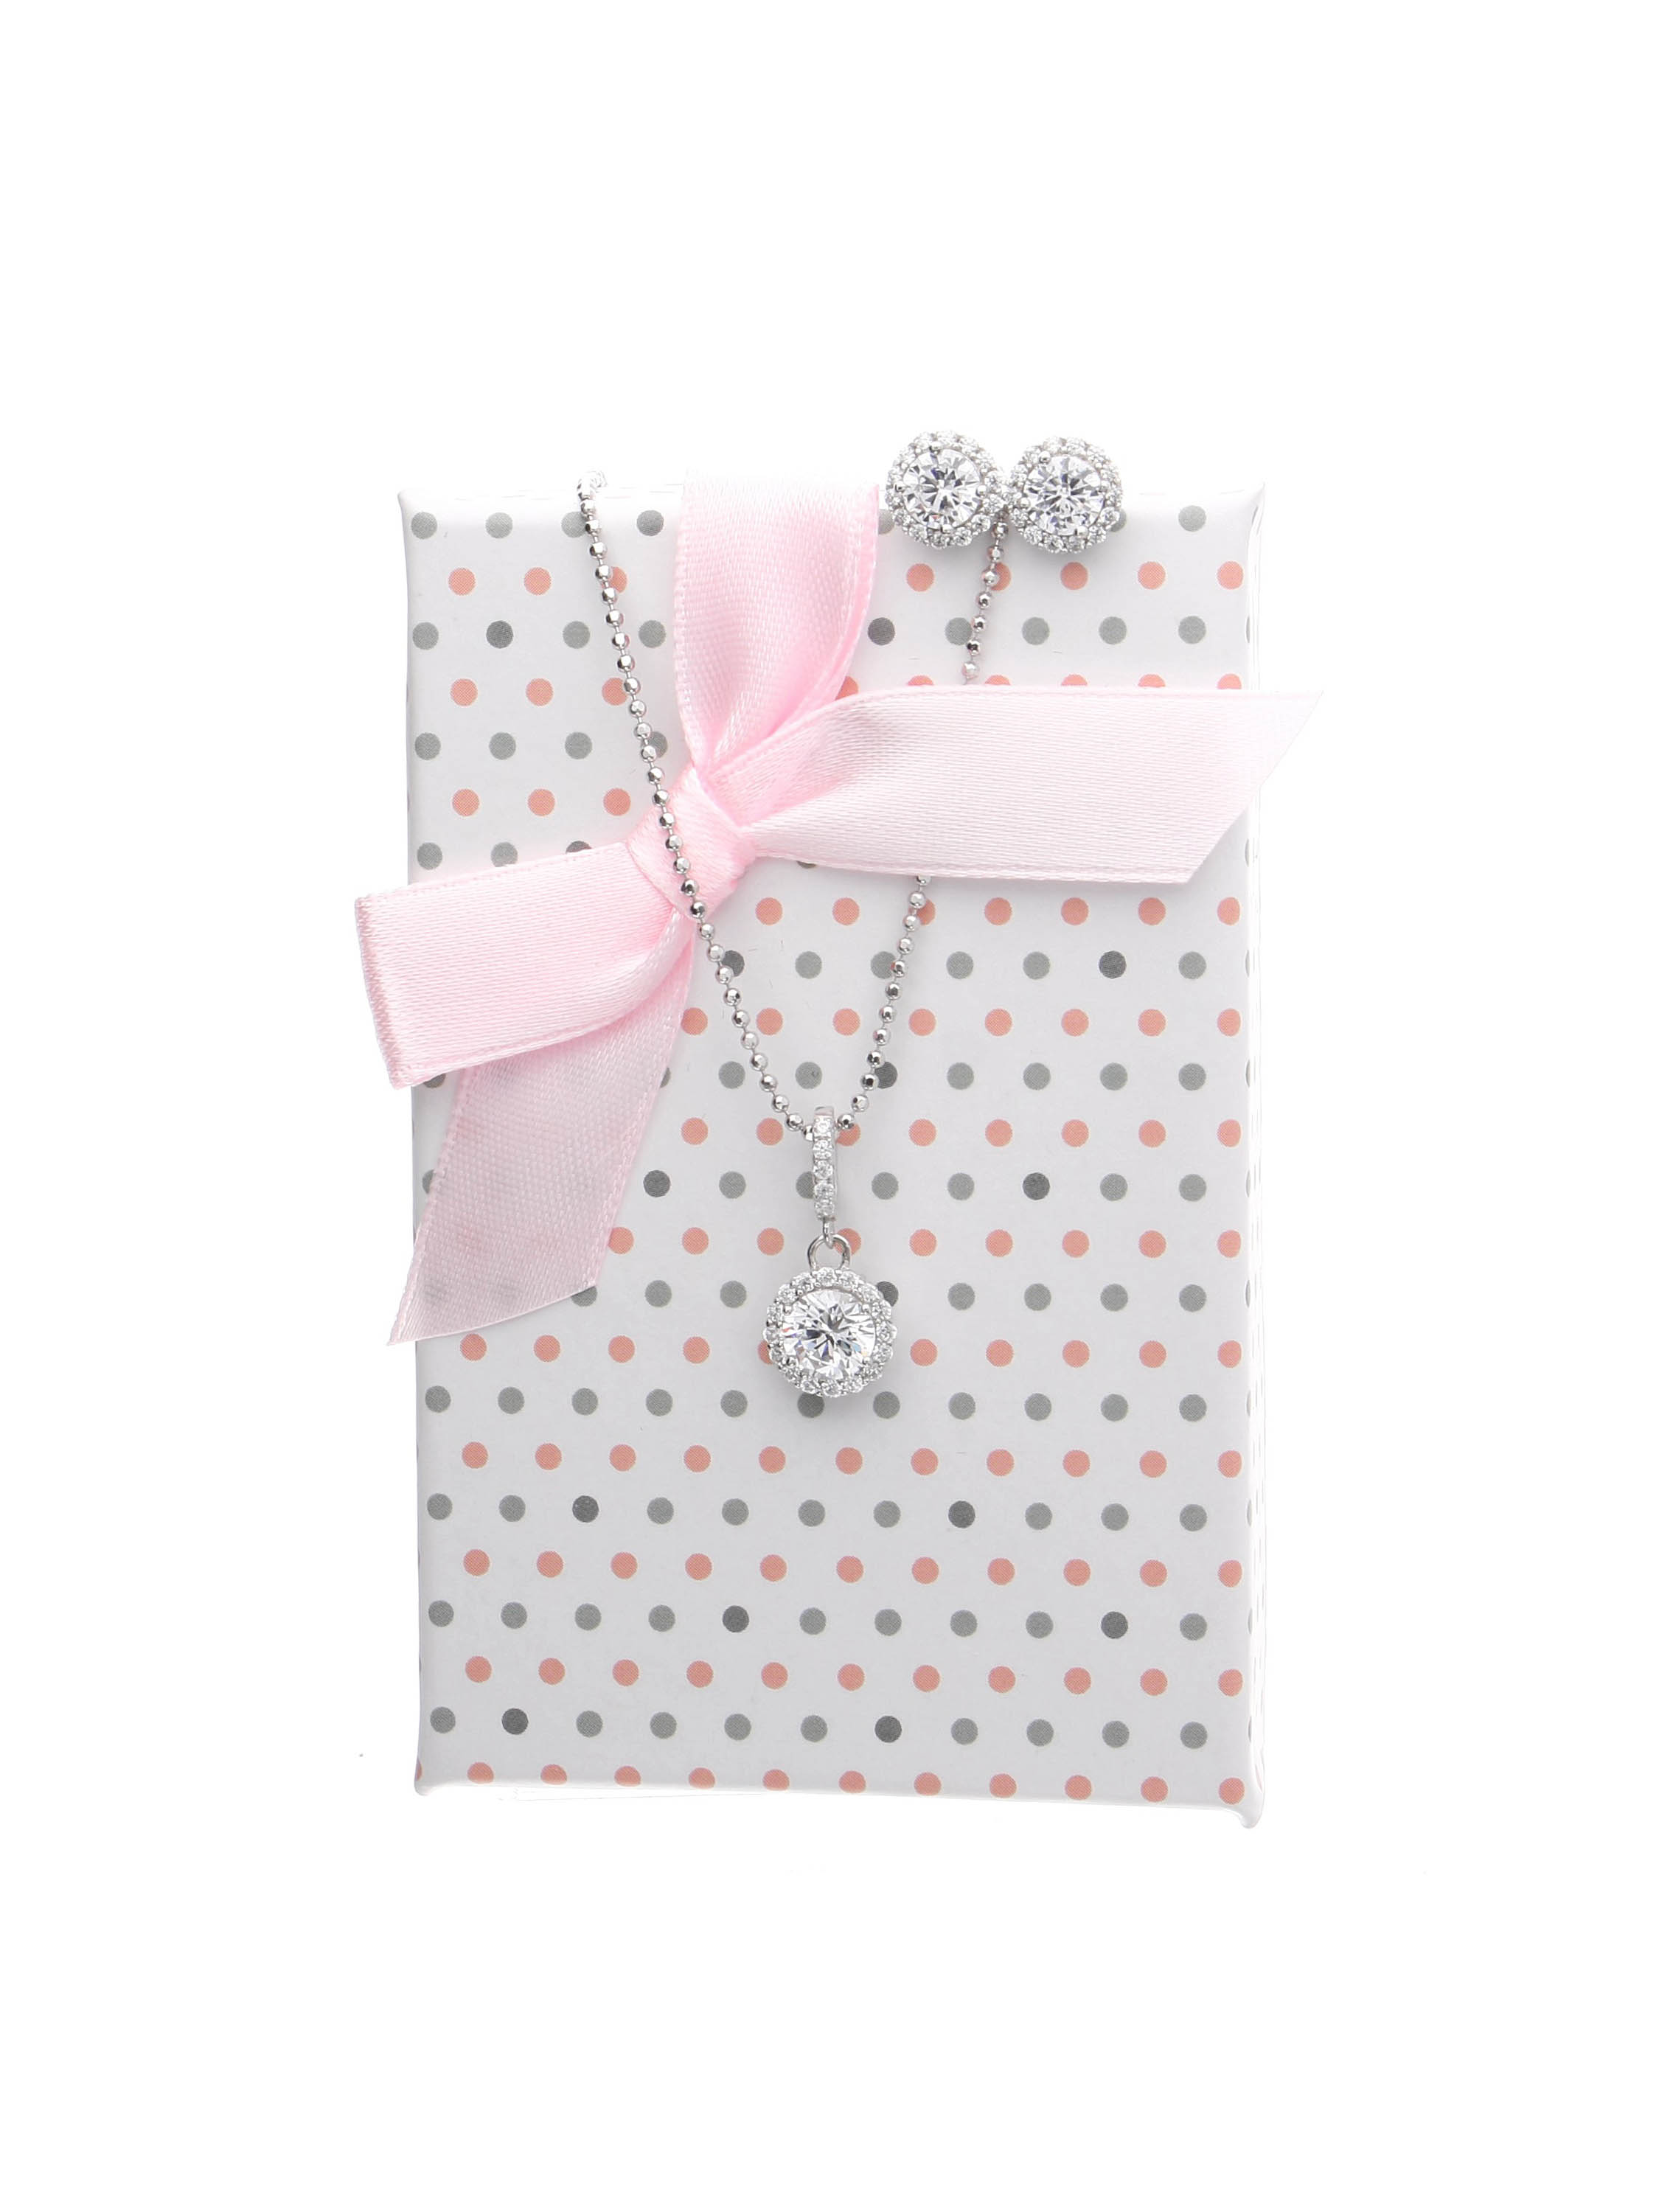 Bepunktete Geschenkschachtel mit schöner Satinschleife für das weiße Amazone Set | Verpackung